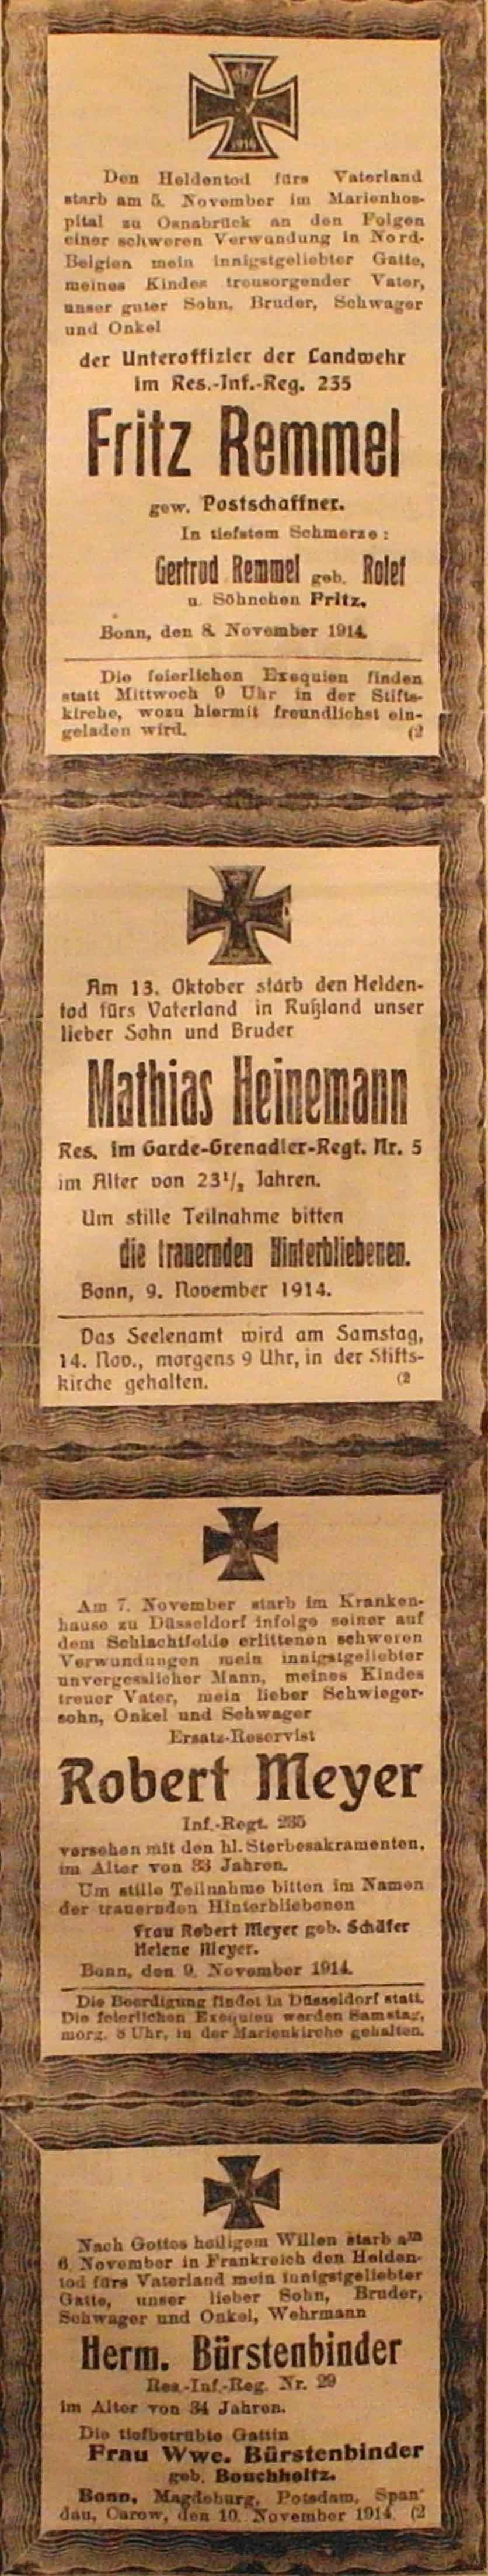 Anzeigen im General-Anzeiger vom 10. November 1914